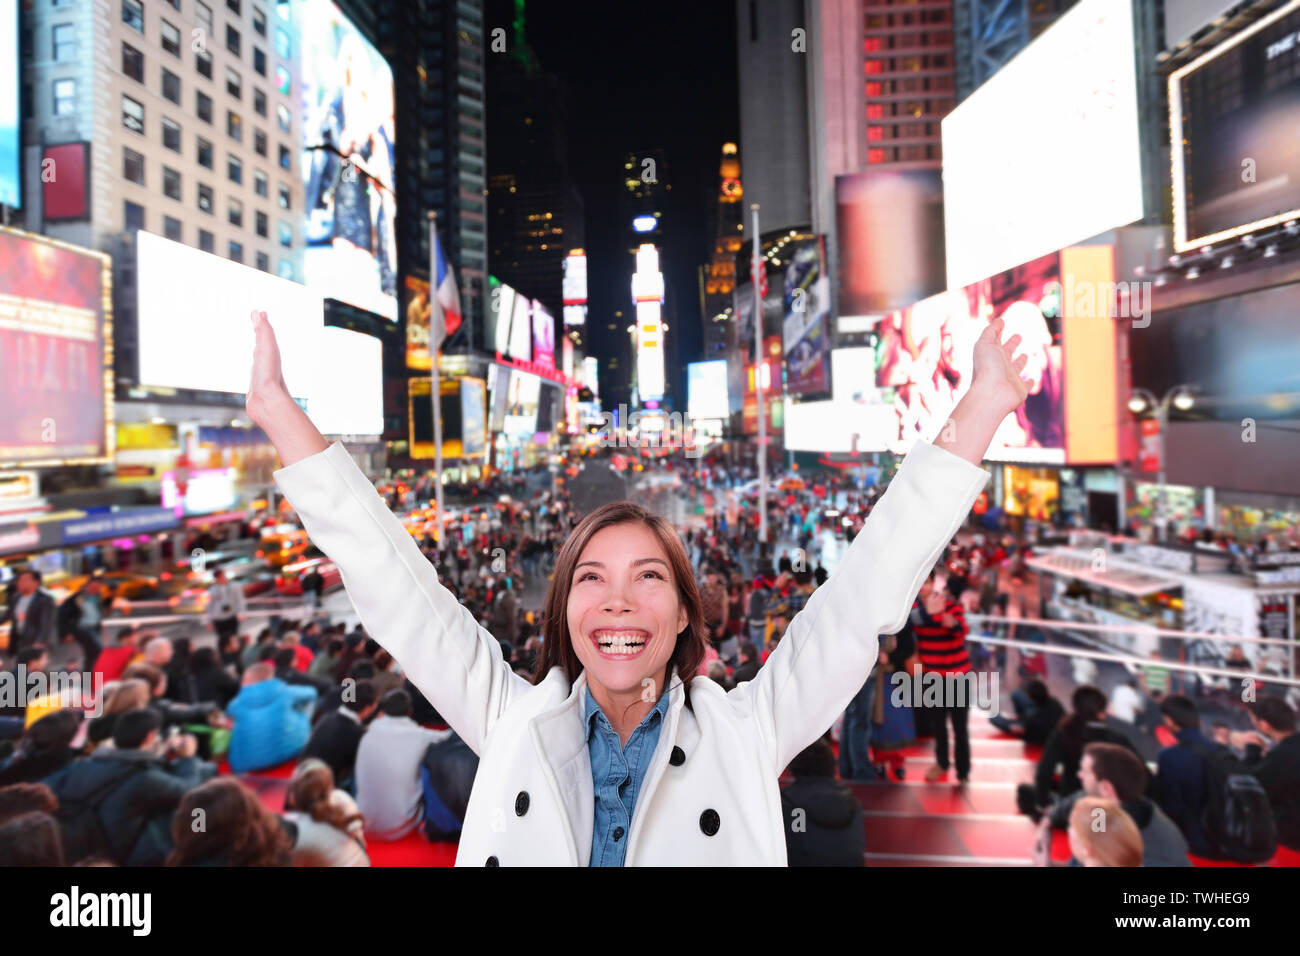 Heureux heureux femme dans la ville de New York, Manhattan, Times Square acclamations joyeuses fête de nuit avec bras levés. Smiling smiling Caucasian asiatiques multiethniques jeunes professionnels urbains dans la vingtaine. Banque D'Images